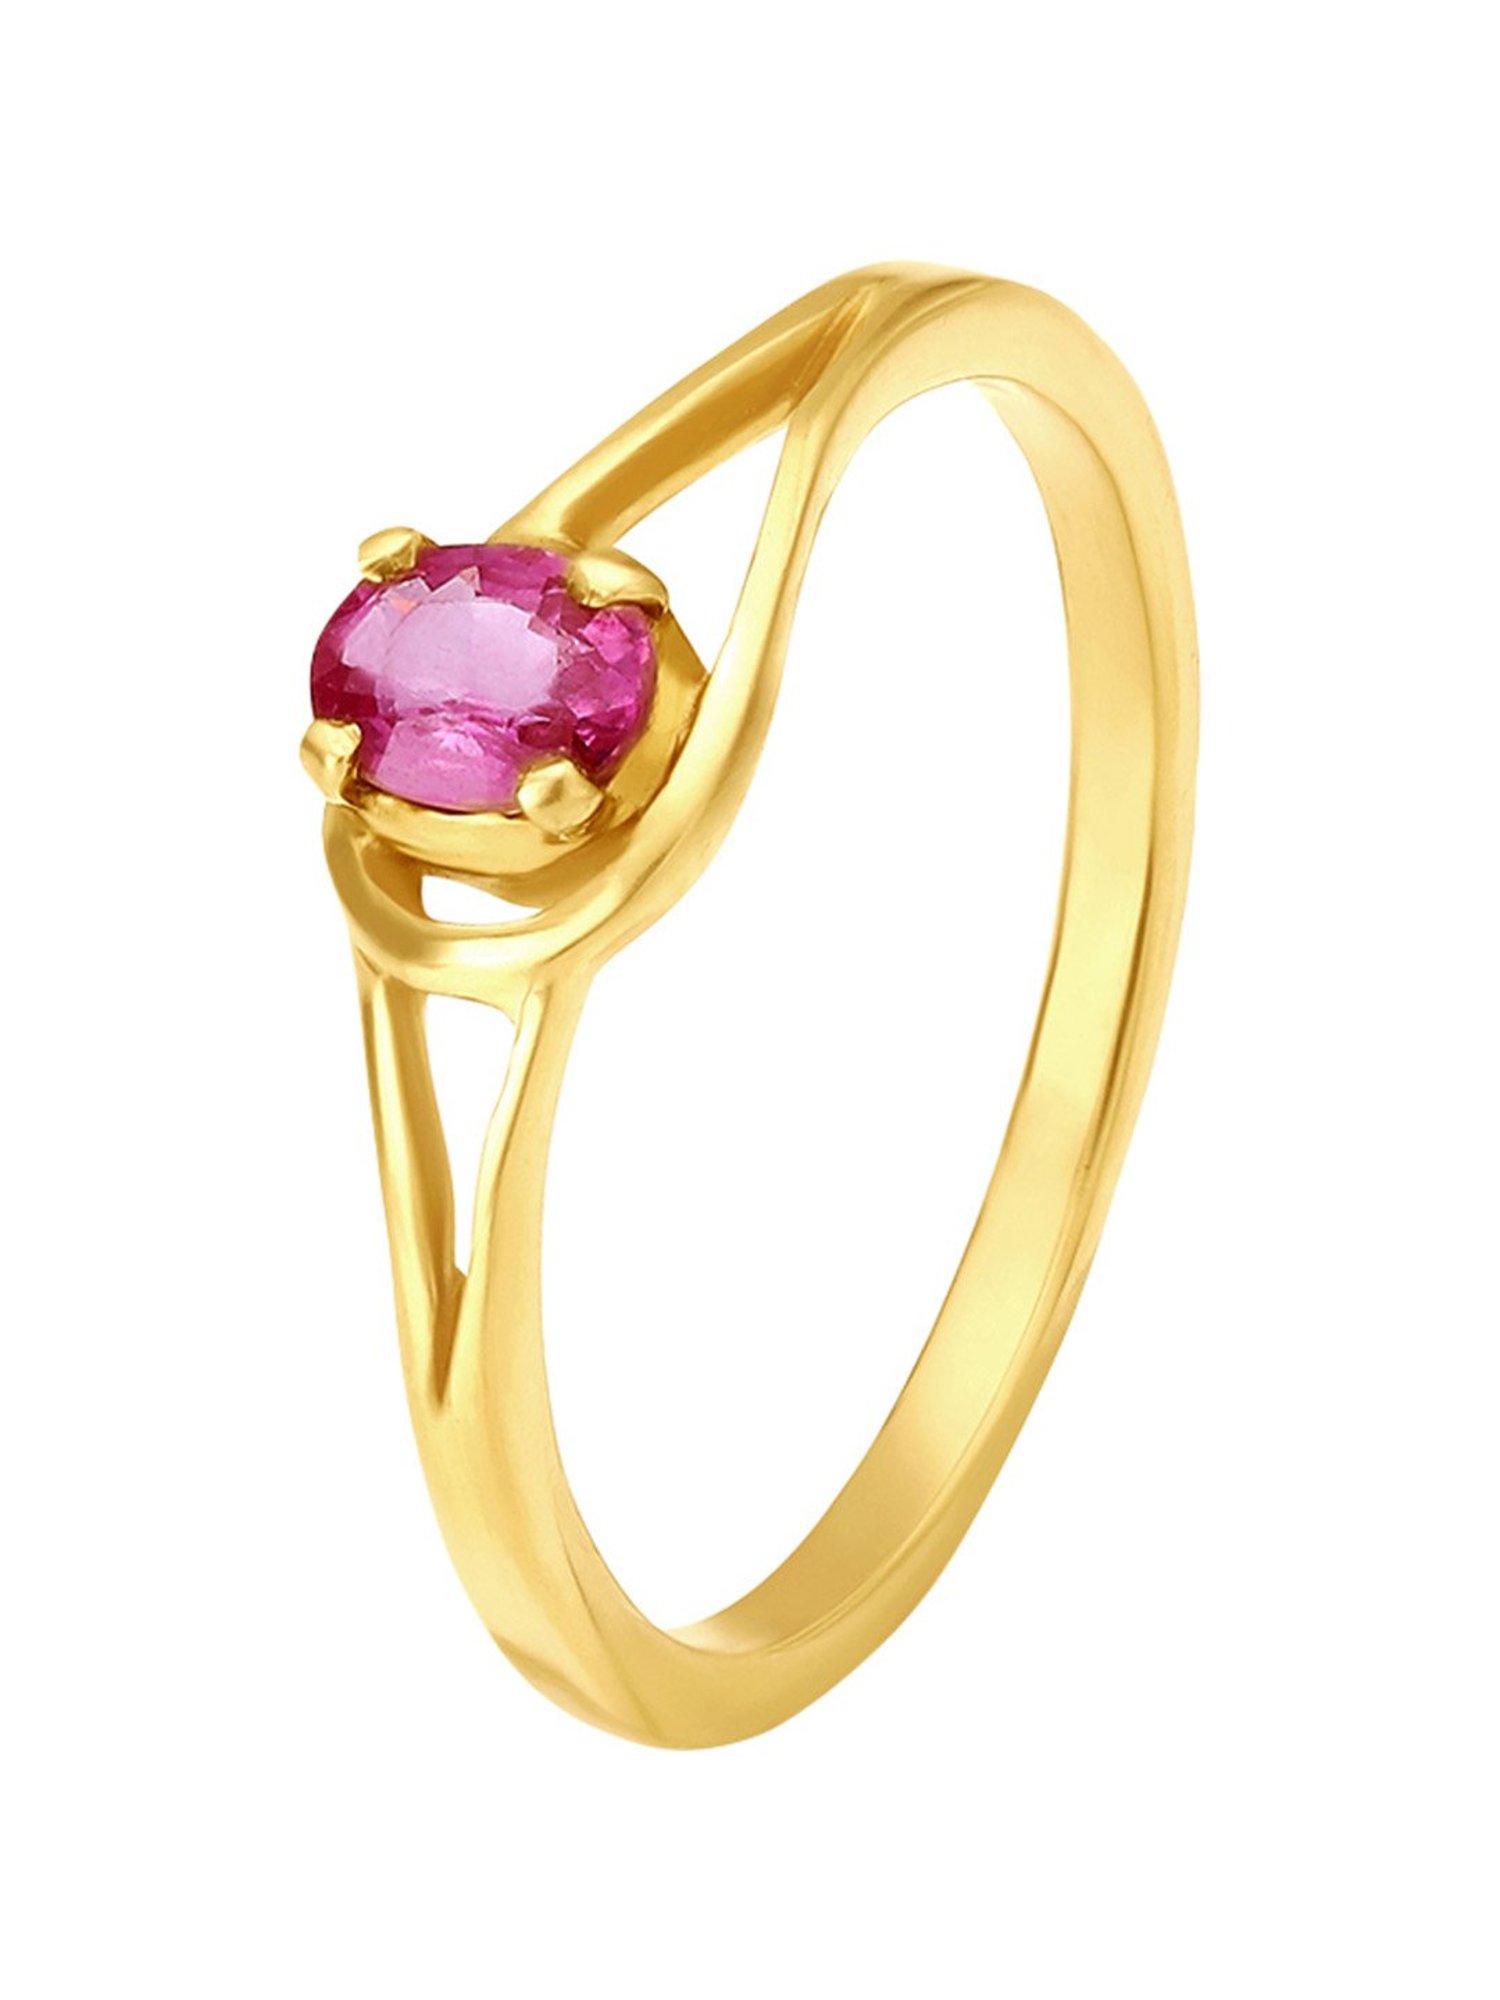 Buy TANISHQ 22KT Gold Finger Ring (16.80 mm) Online - Best Price TANISHQ  22KT Gold Finger Ring (16.80 mm) - Justdial Shop Online.